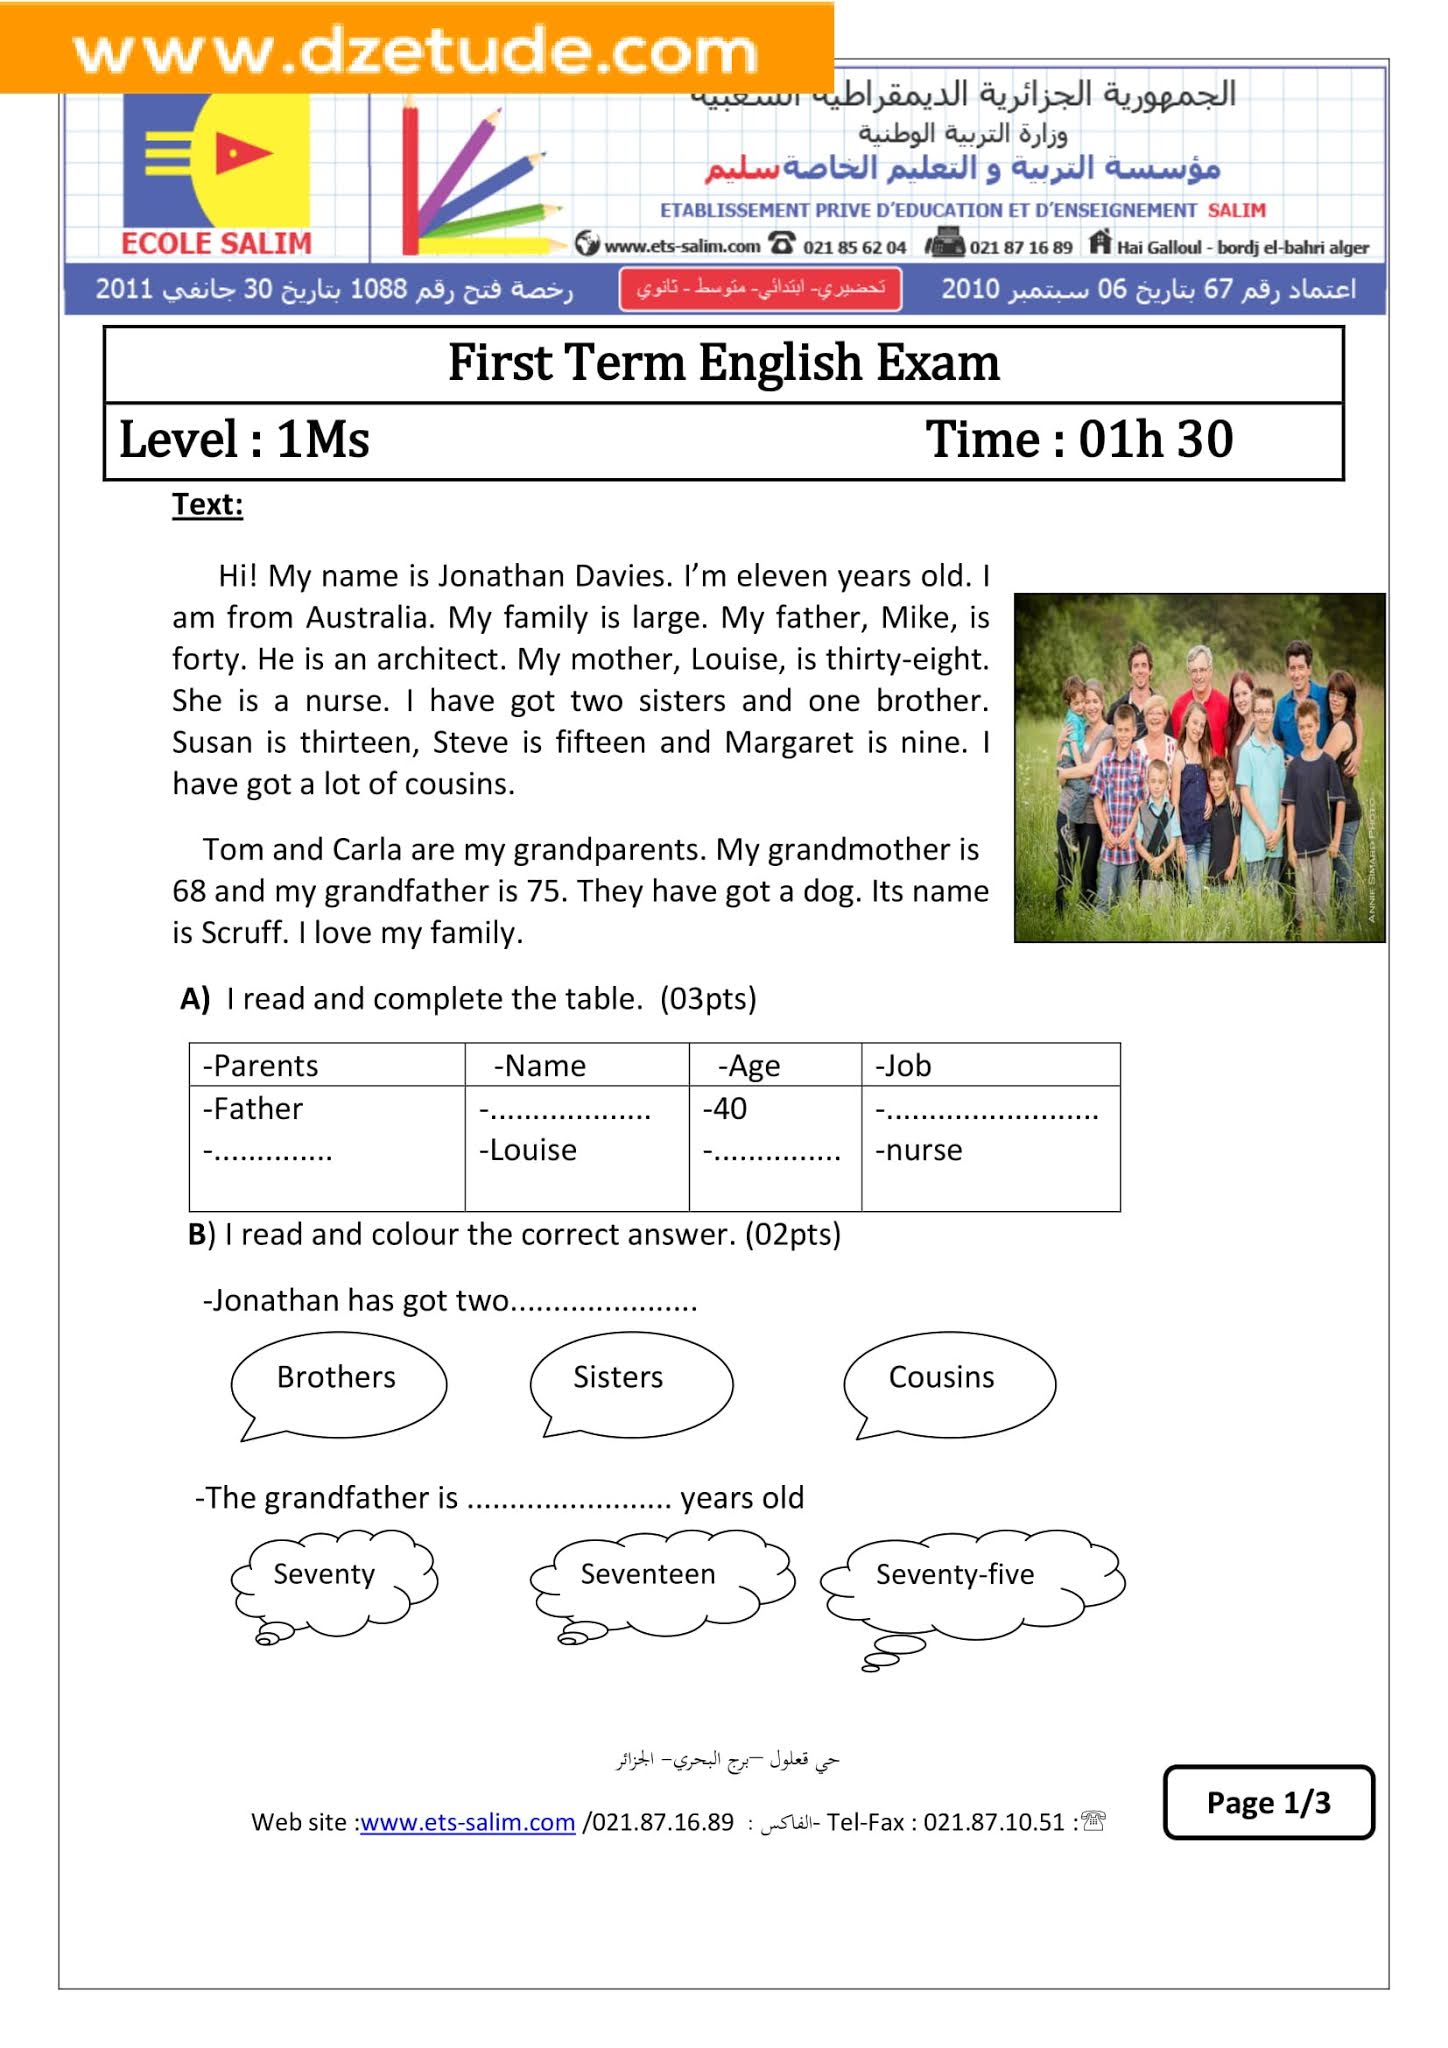 إختبار اللغة الإنجليزية الفصل الأول للسنة الأولى متوسط - الجيل الثاني نموذج 5